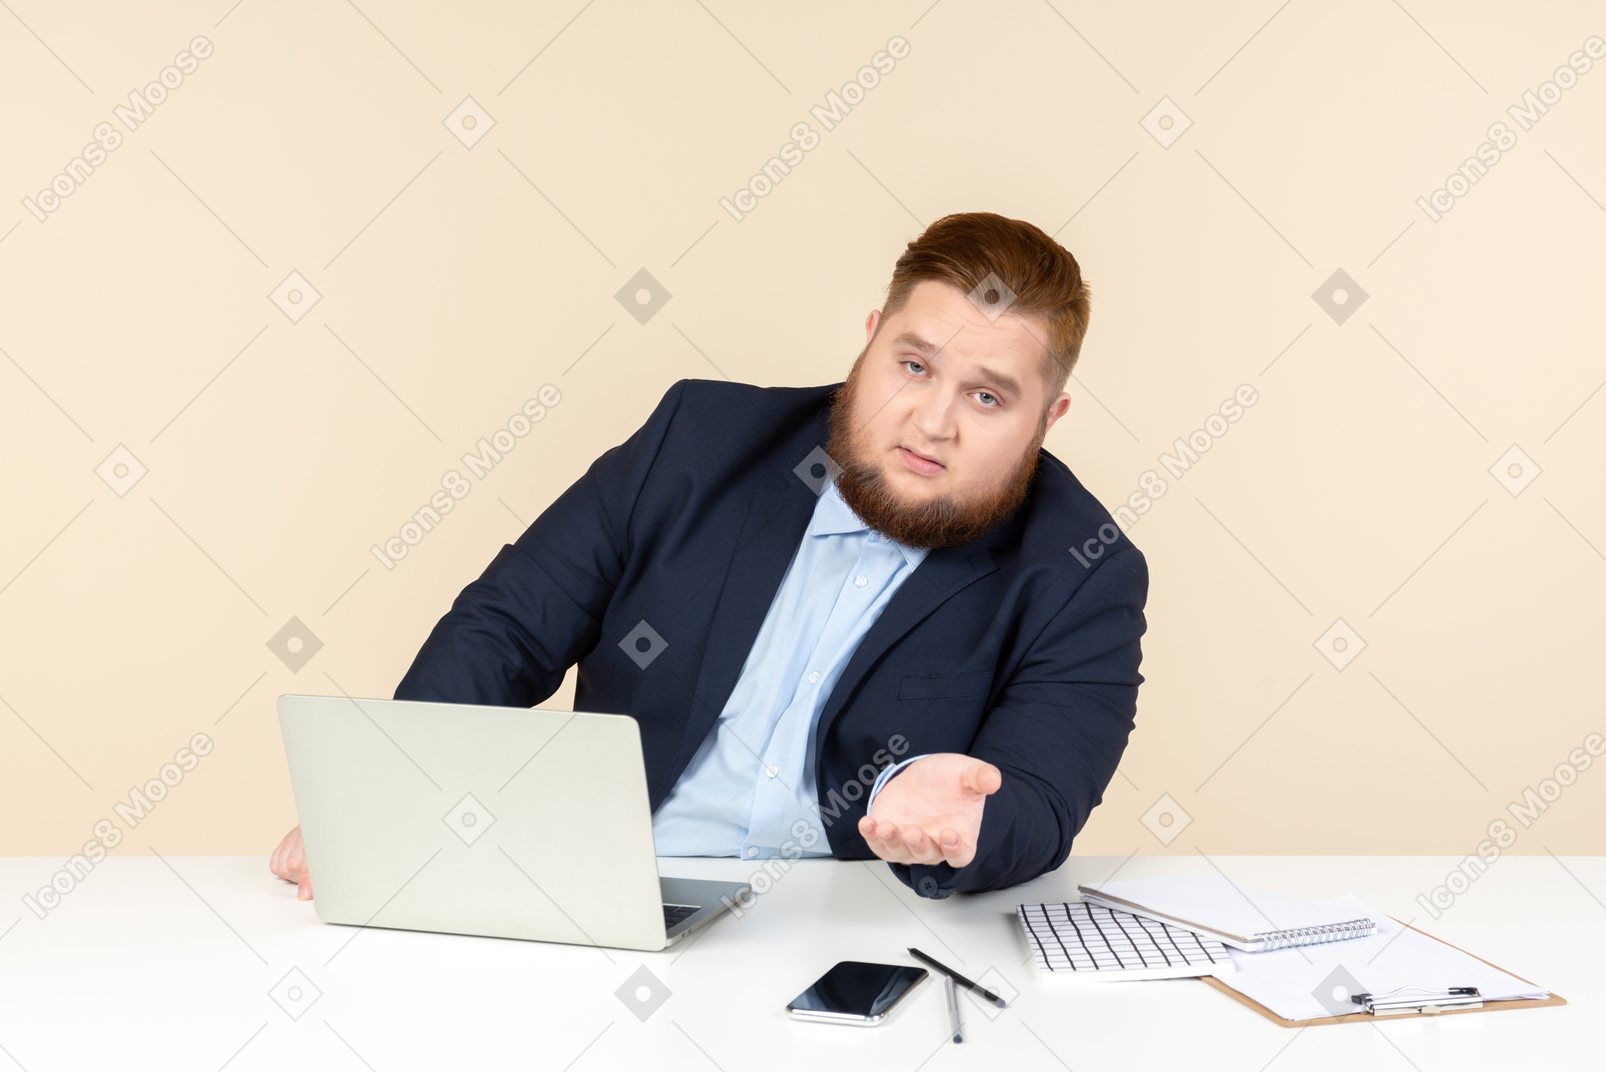 Giovane uomo in sovrappeso seduto alla scrivania e piace parlare di qualcosa